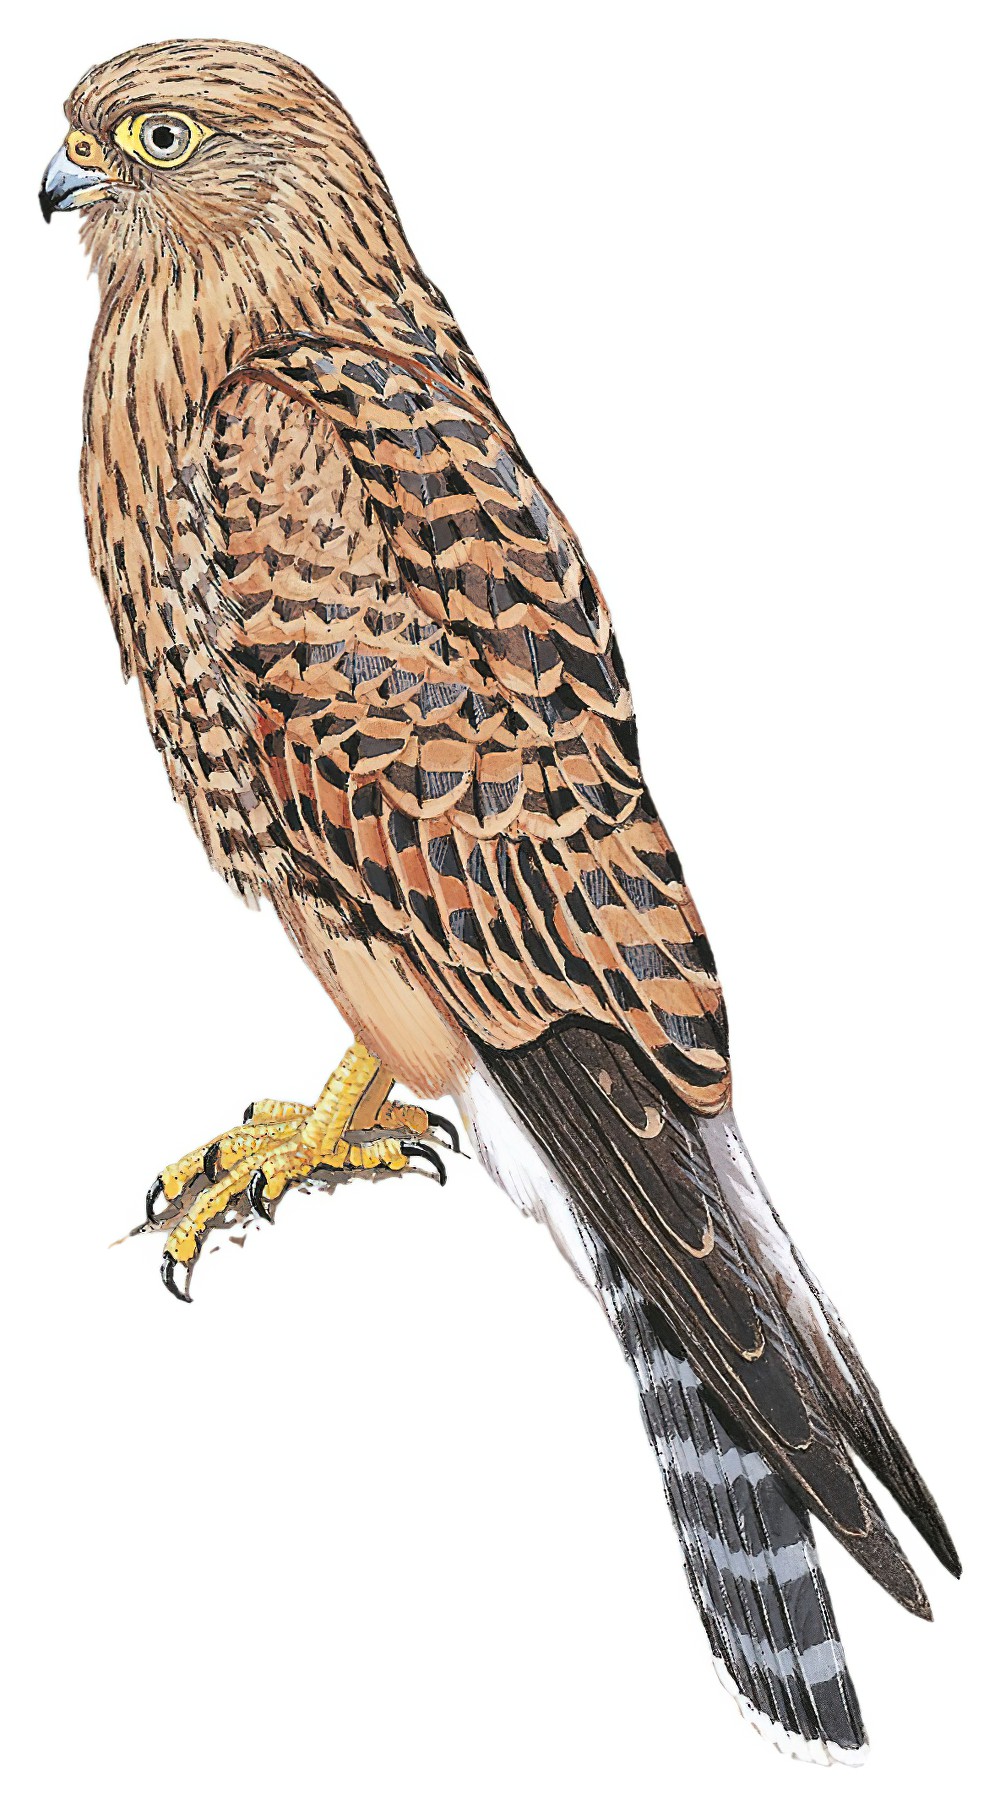 Greater Kestrel / Falco rupicoloides